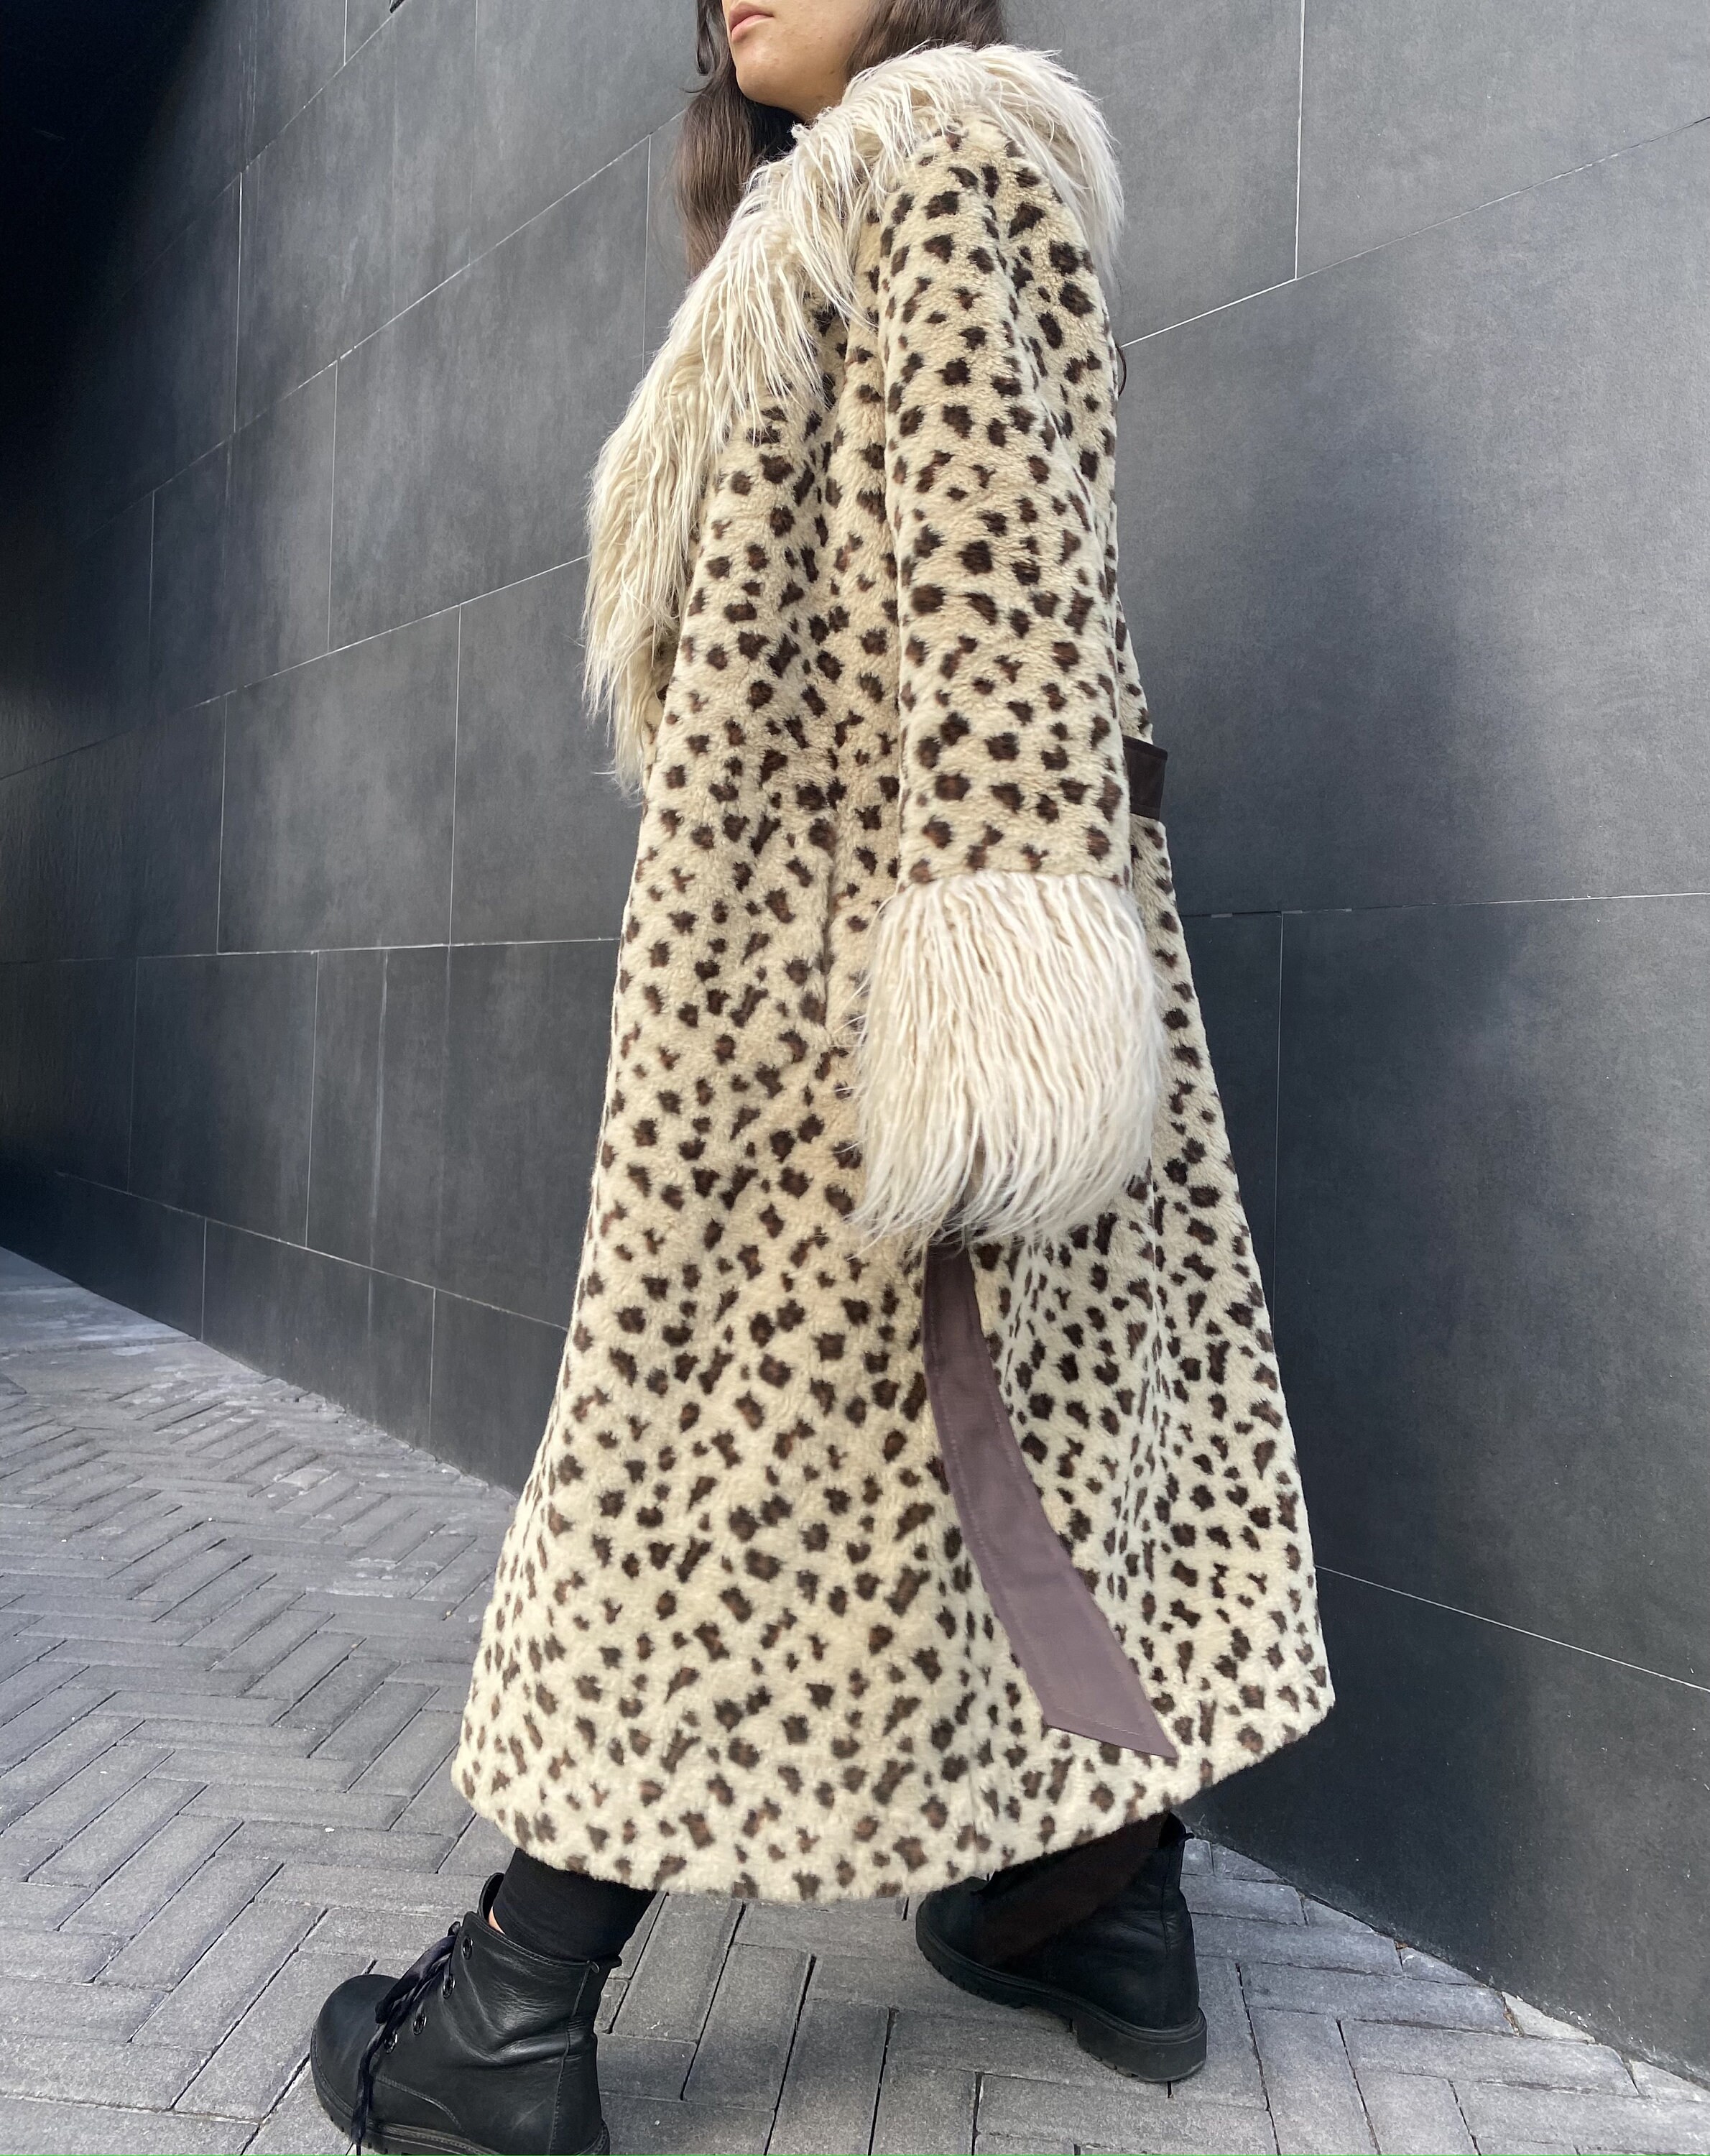 Afghan Faux Fur Coat for Woman in Leopard Print, Long Fake Fur Coat in ...